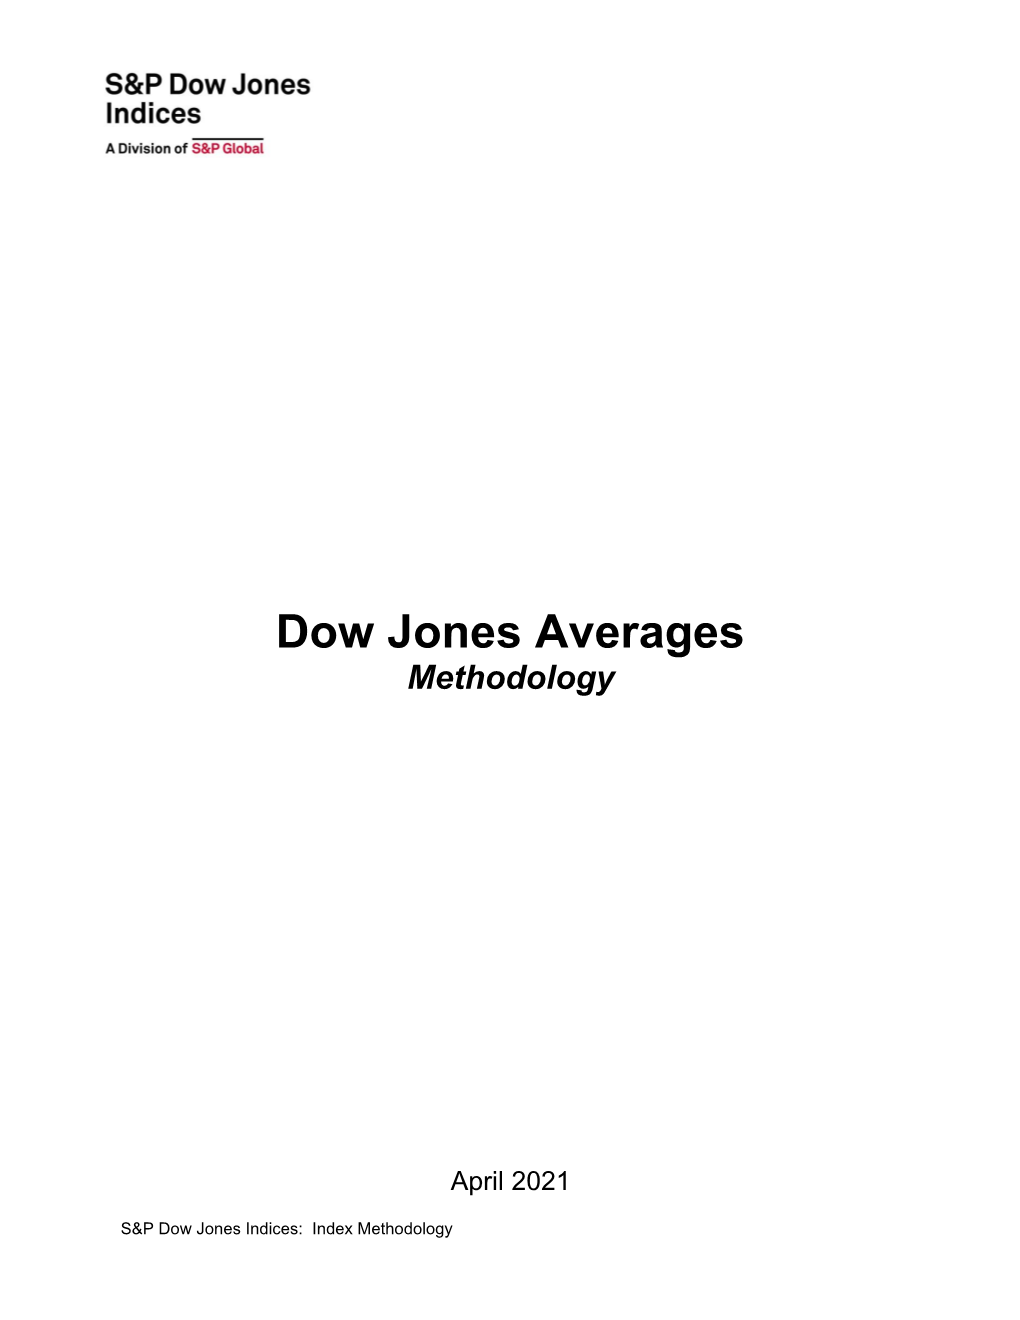 Dow Jones Averages Methodology